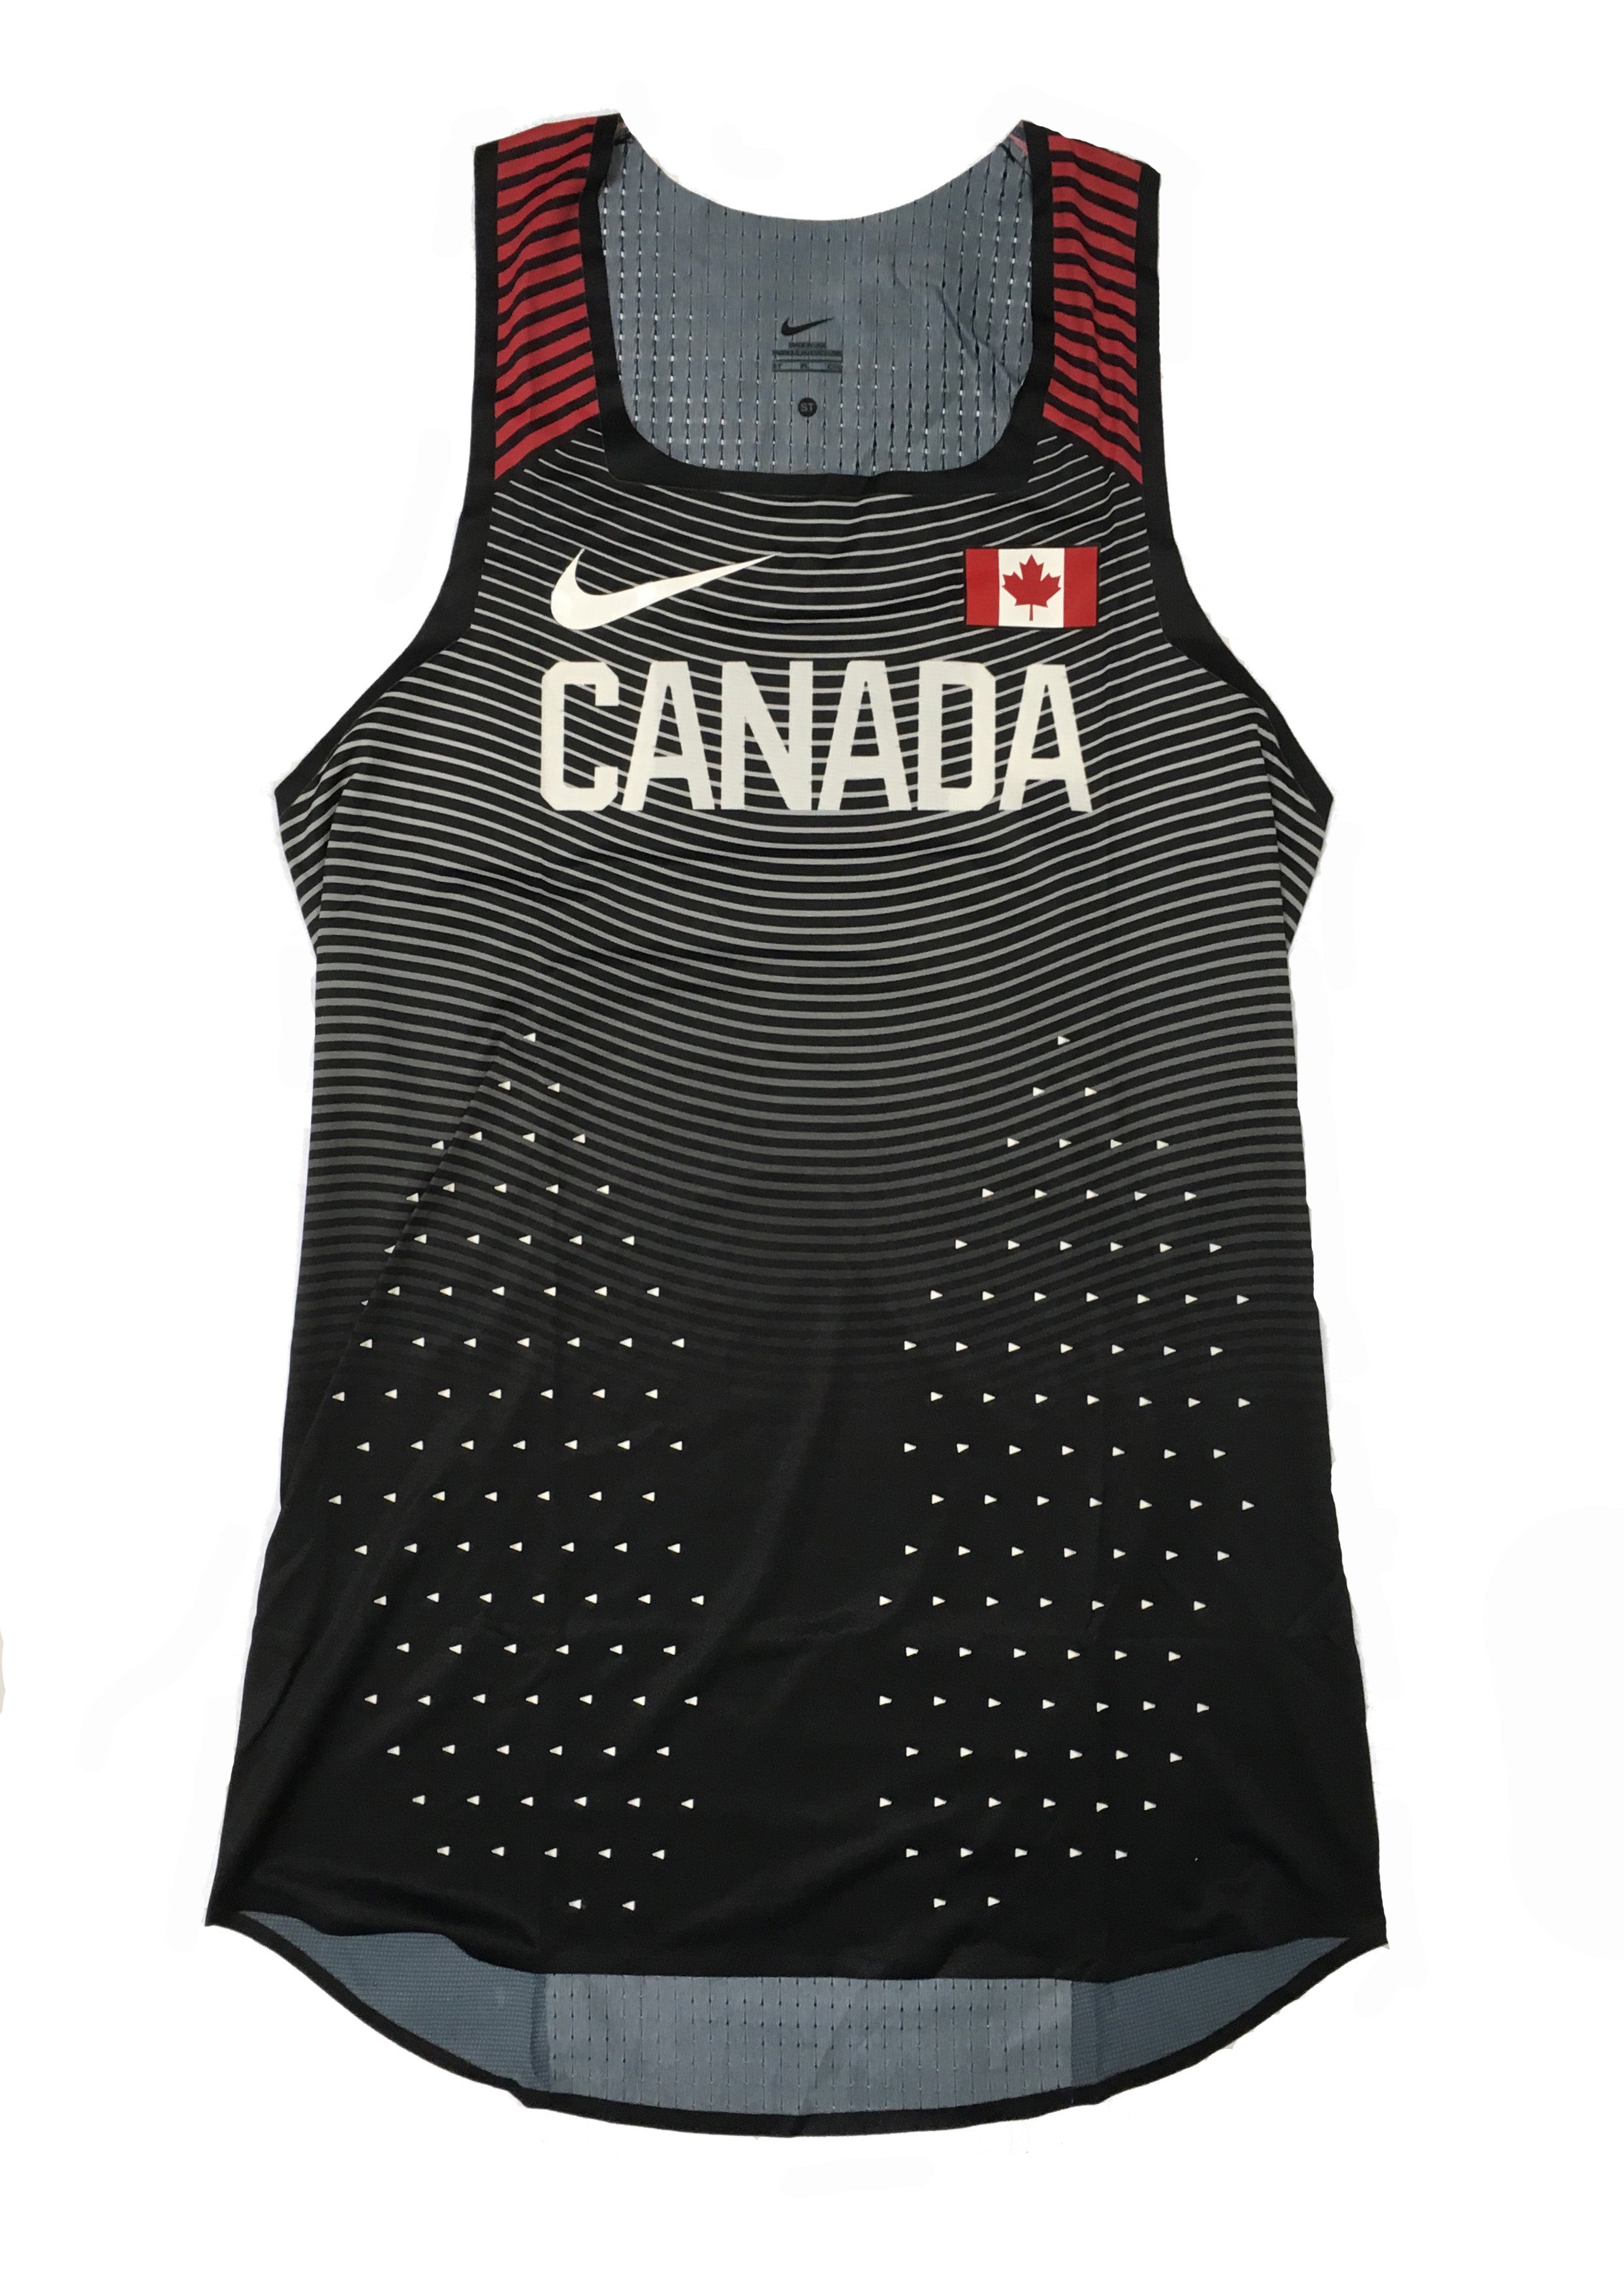 Men's Tall Nike Vapor Team Canada Singlet – Athletics Canada